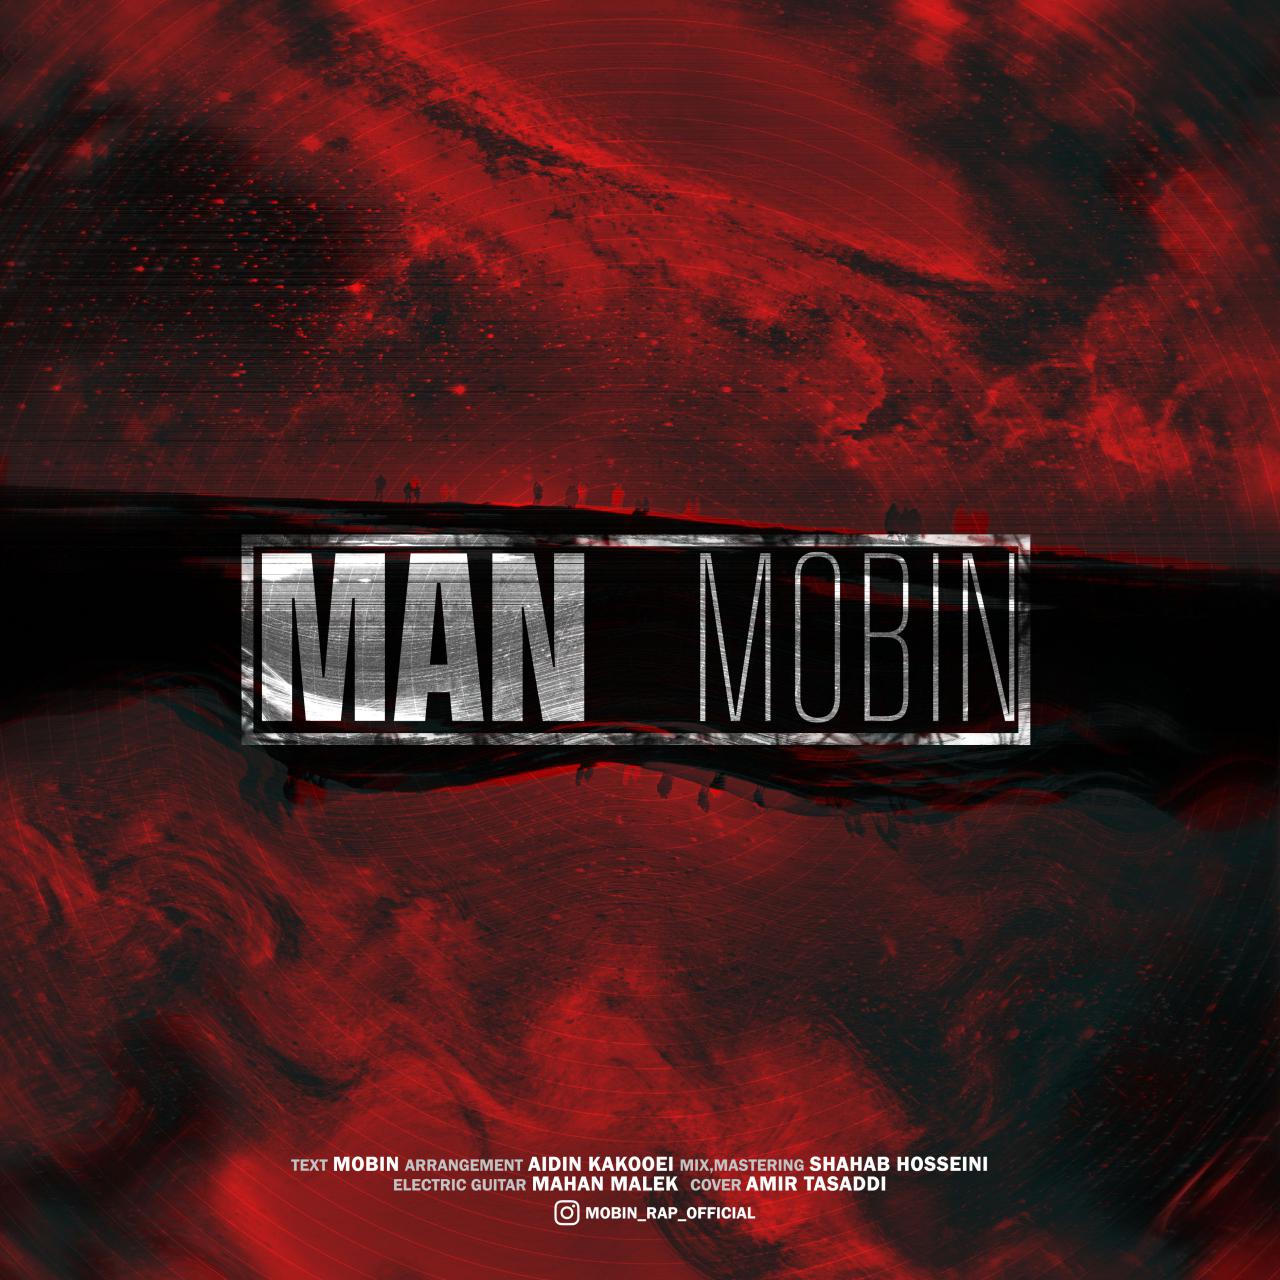  دانلود آهنگ جدید مبین - من | Download New Music By Mobin - Man